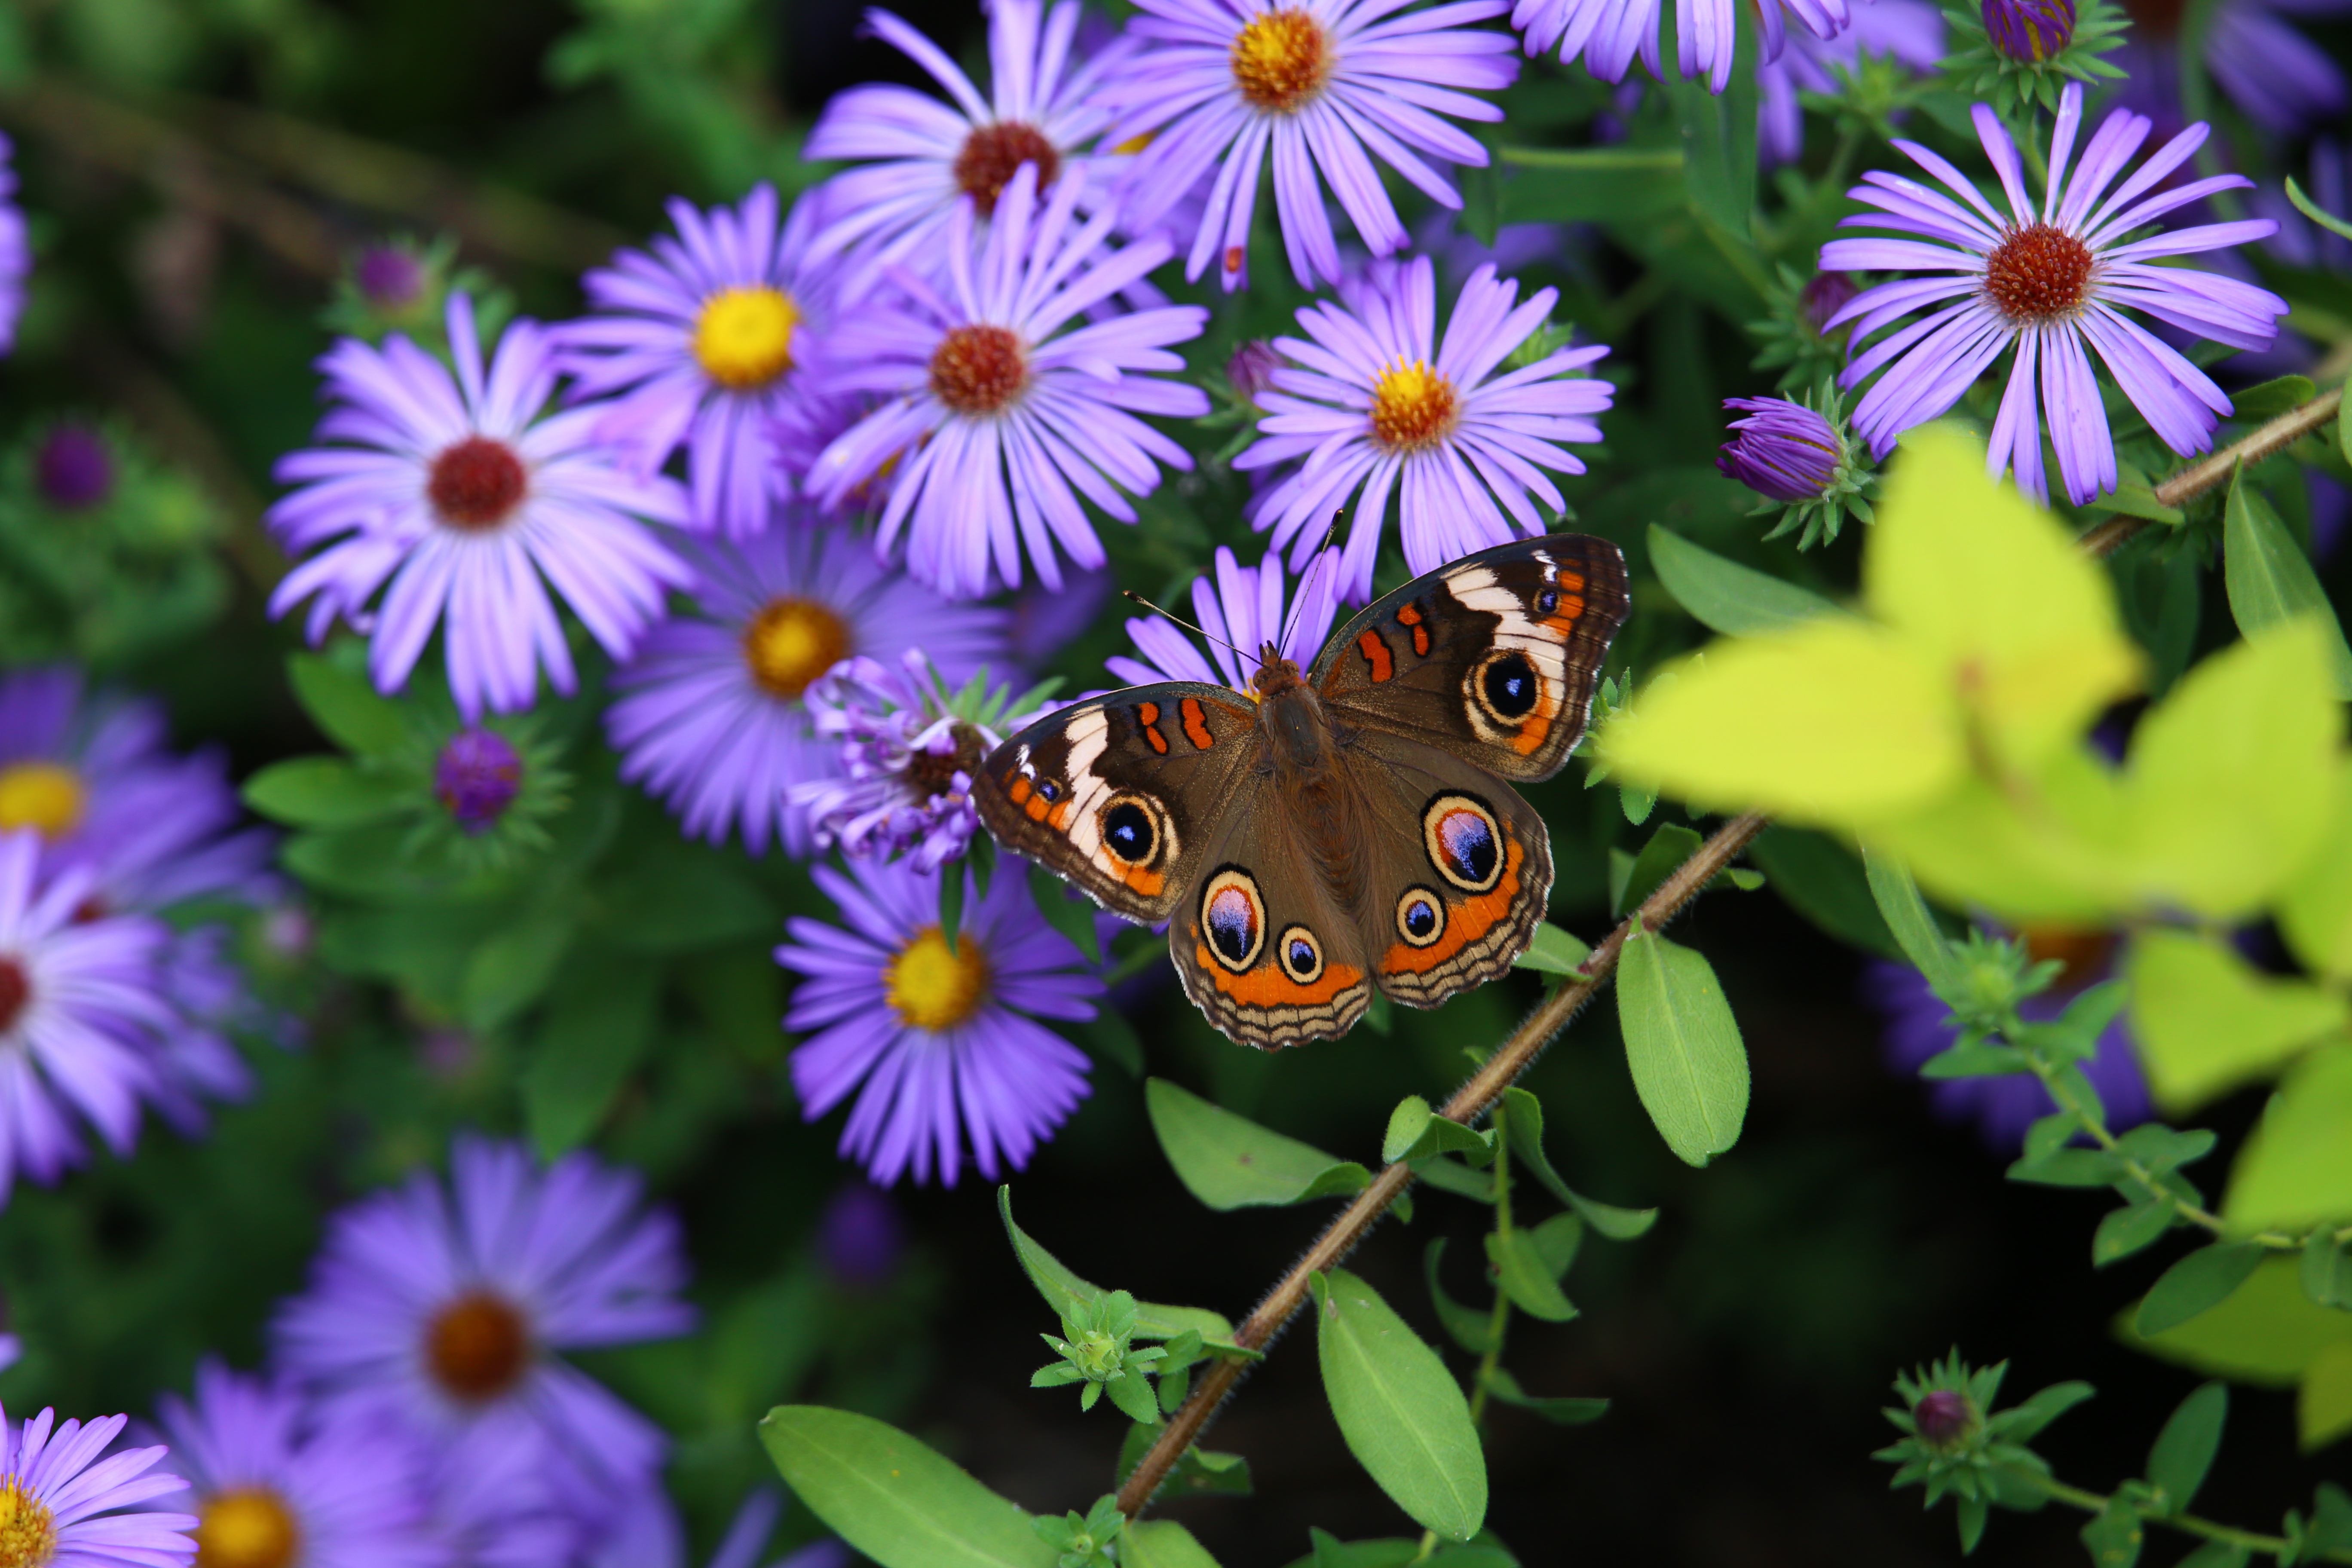 Descarga gratuita de fondo de pantalla para móvil de Animales, Flor, Insecto, Mariposa, Macrofotografía.